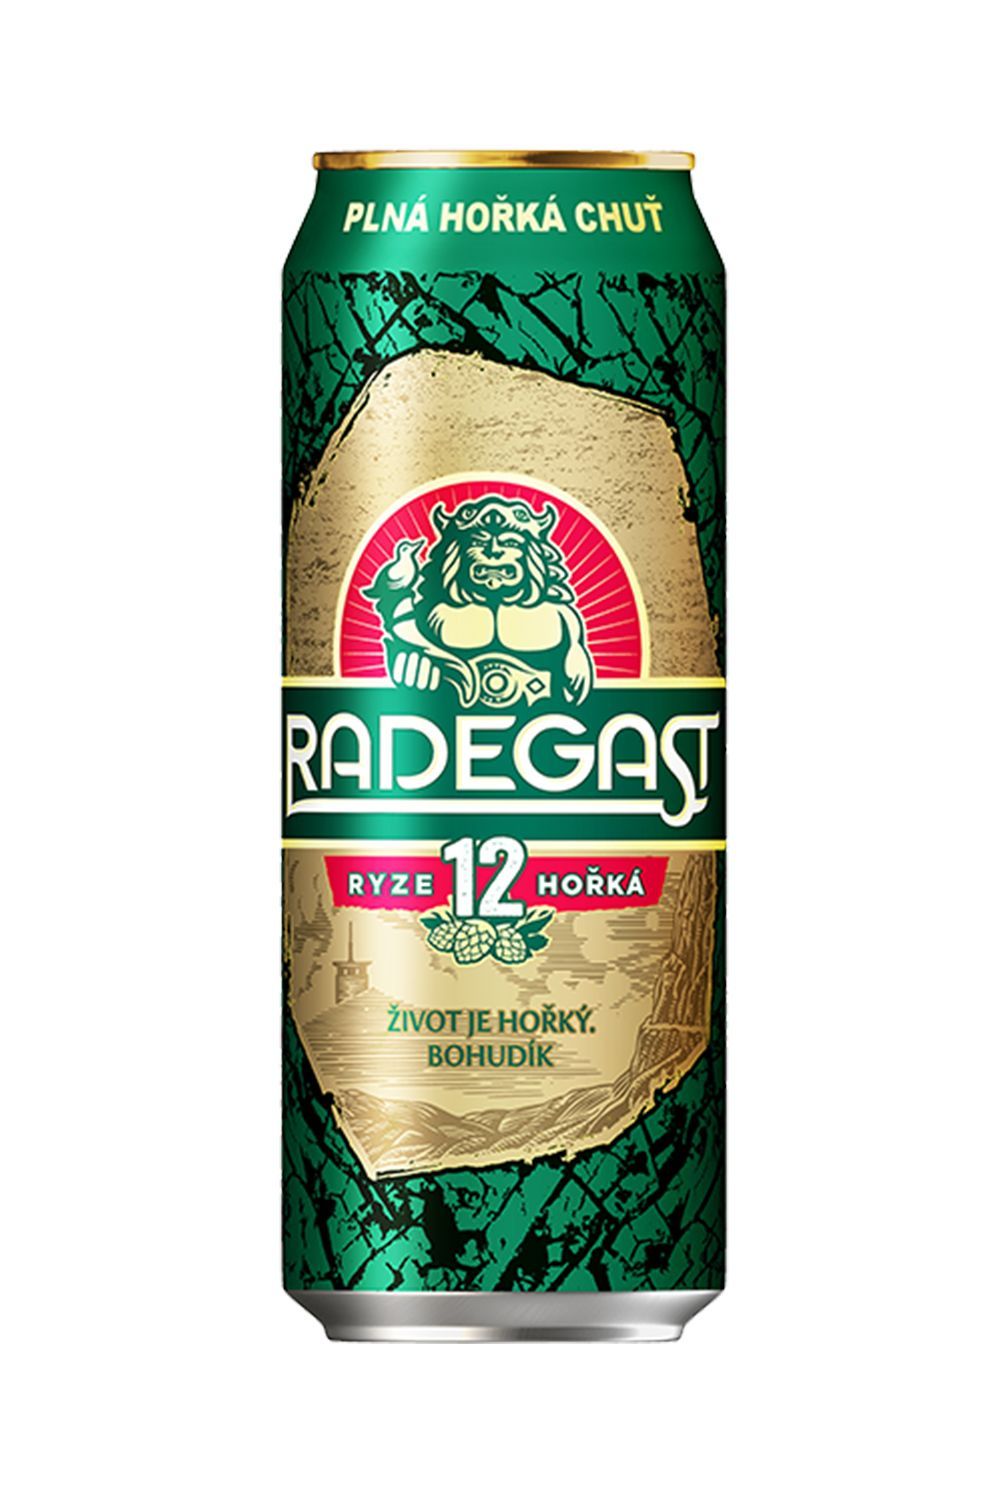 Пиво Радегаст Риз Горка 12  5,1% ж/б 0,5 л (Чехия)